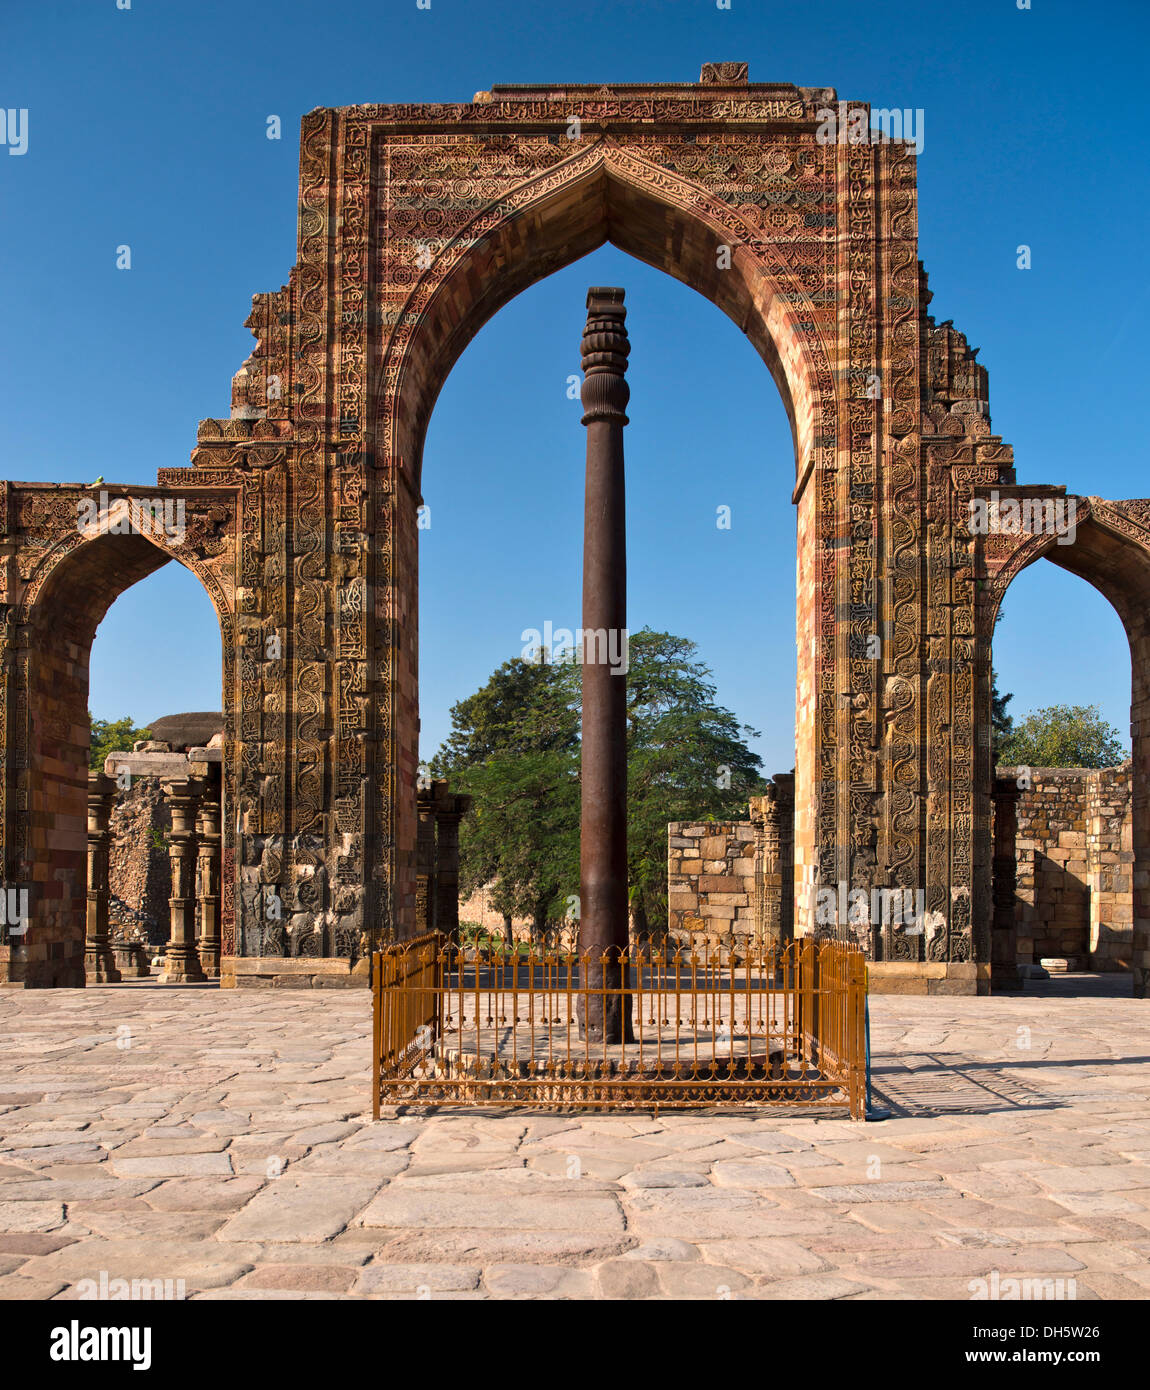 Eingangsportal der Masjid Moschee Quwwat-Ul-Islam mit Reliefverzierungen und einer eisernen Säule im Rathaushof, Qutb Minar Stockfoto